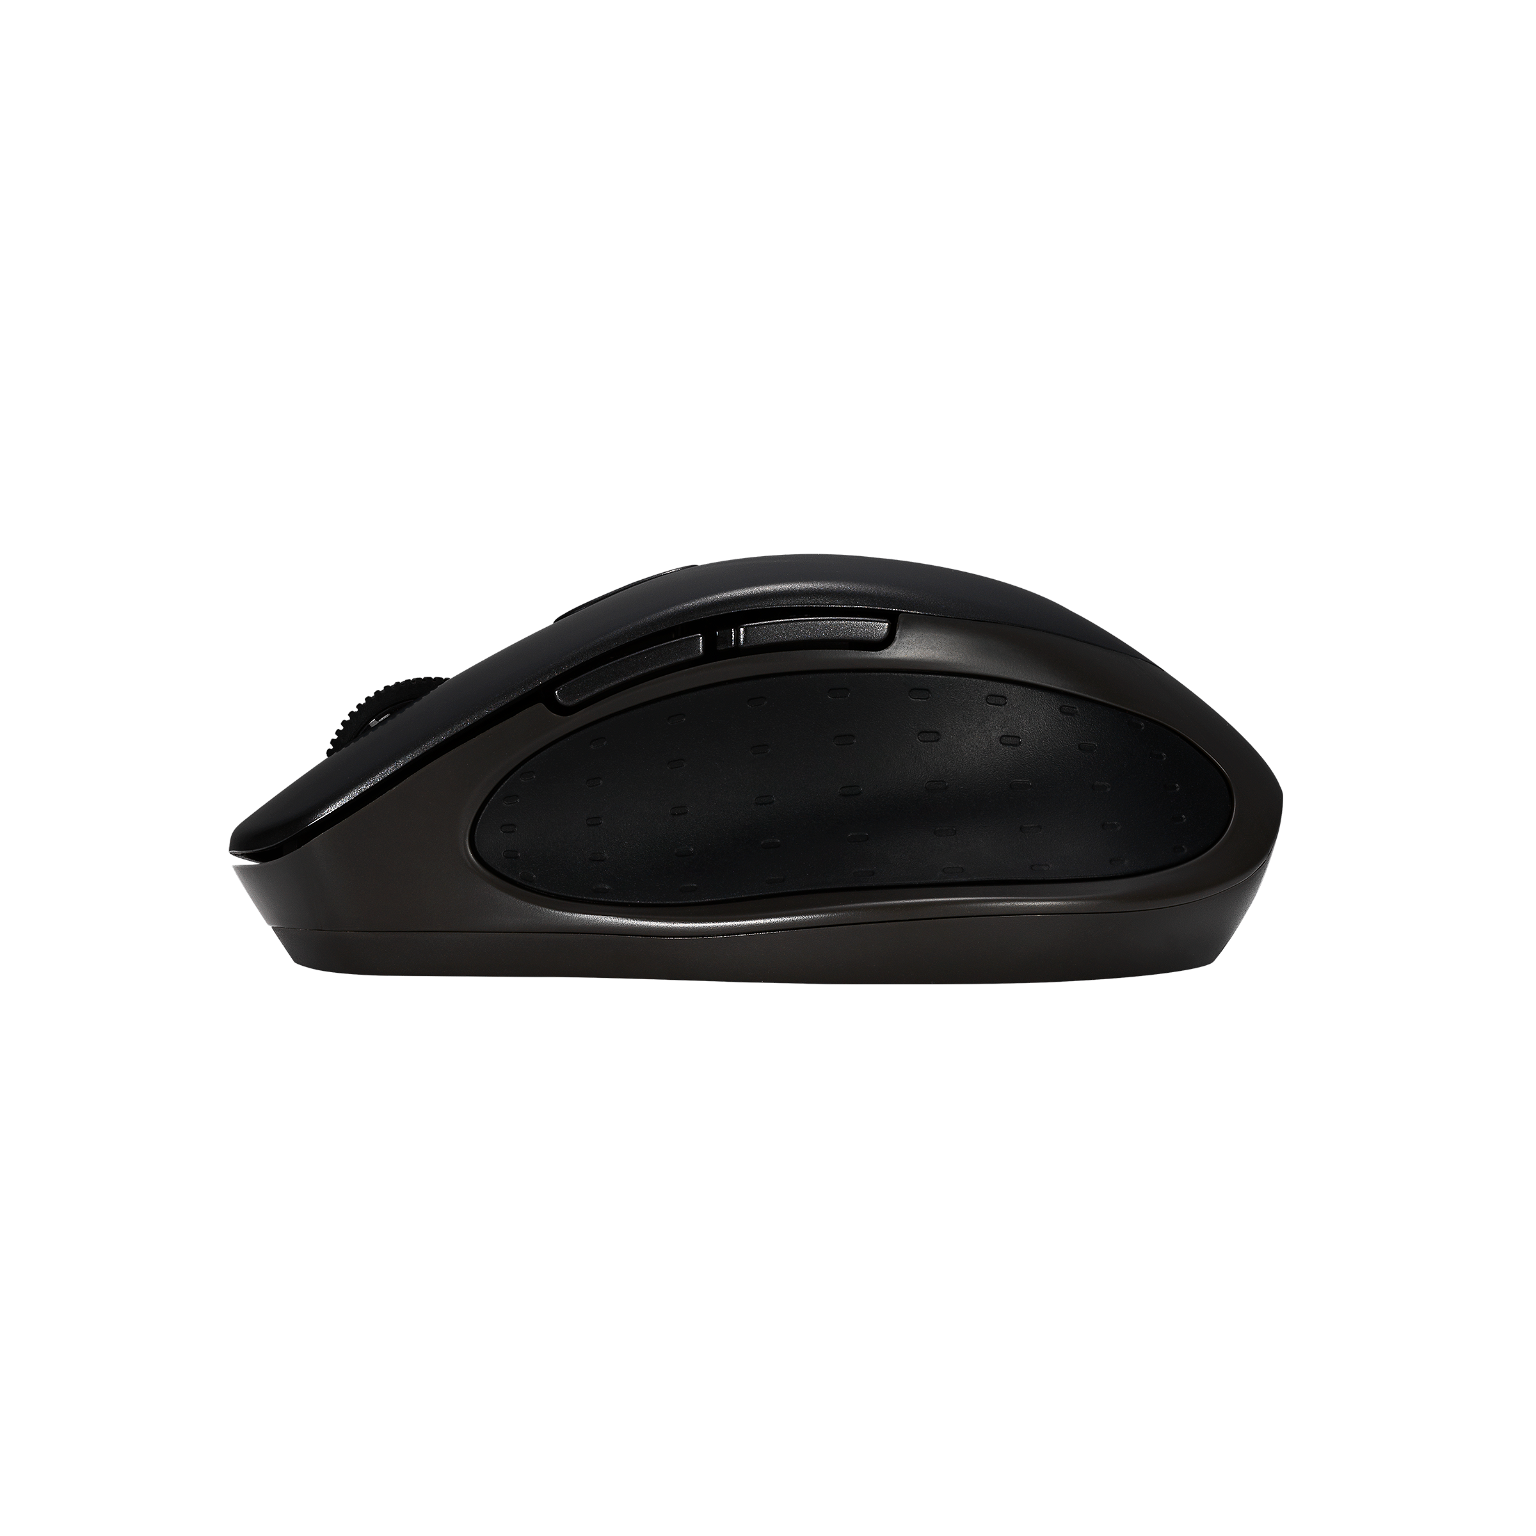 Kompiuterio pelė Asus MW203 Wireless, juoda - 3